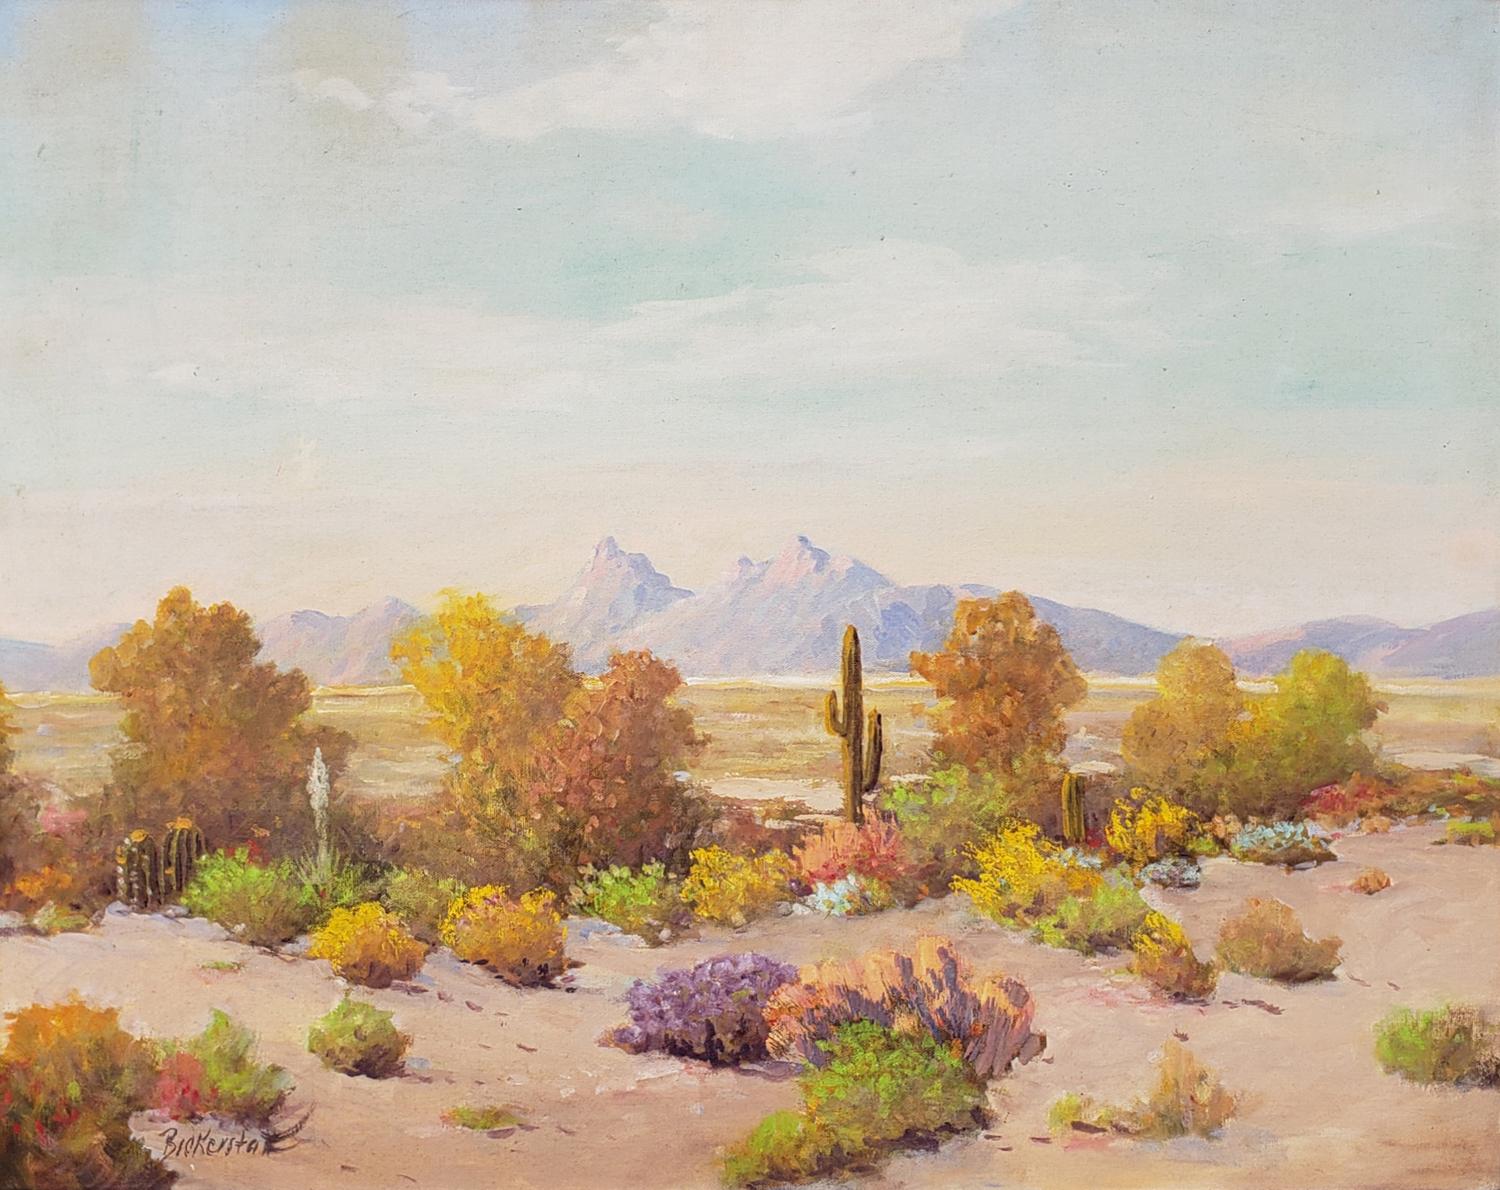 Untitled (Superstition Wilderness, Arizona Desert Scene) - Painting by George Sanders Bickerstaff